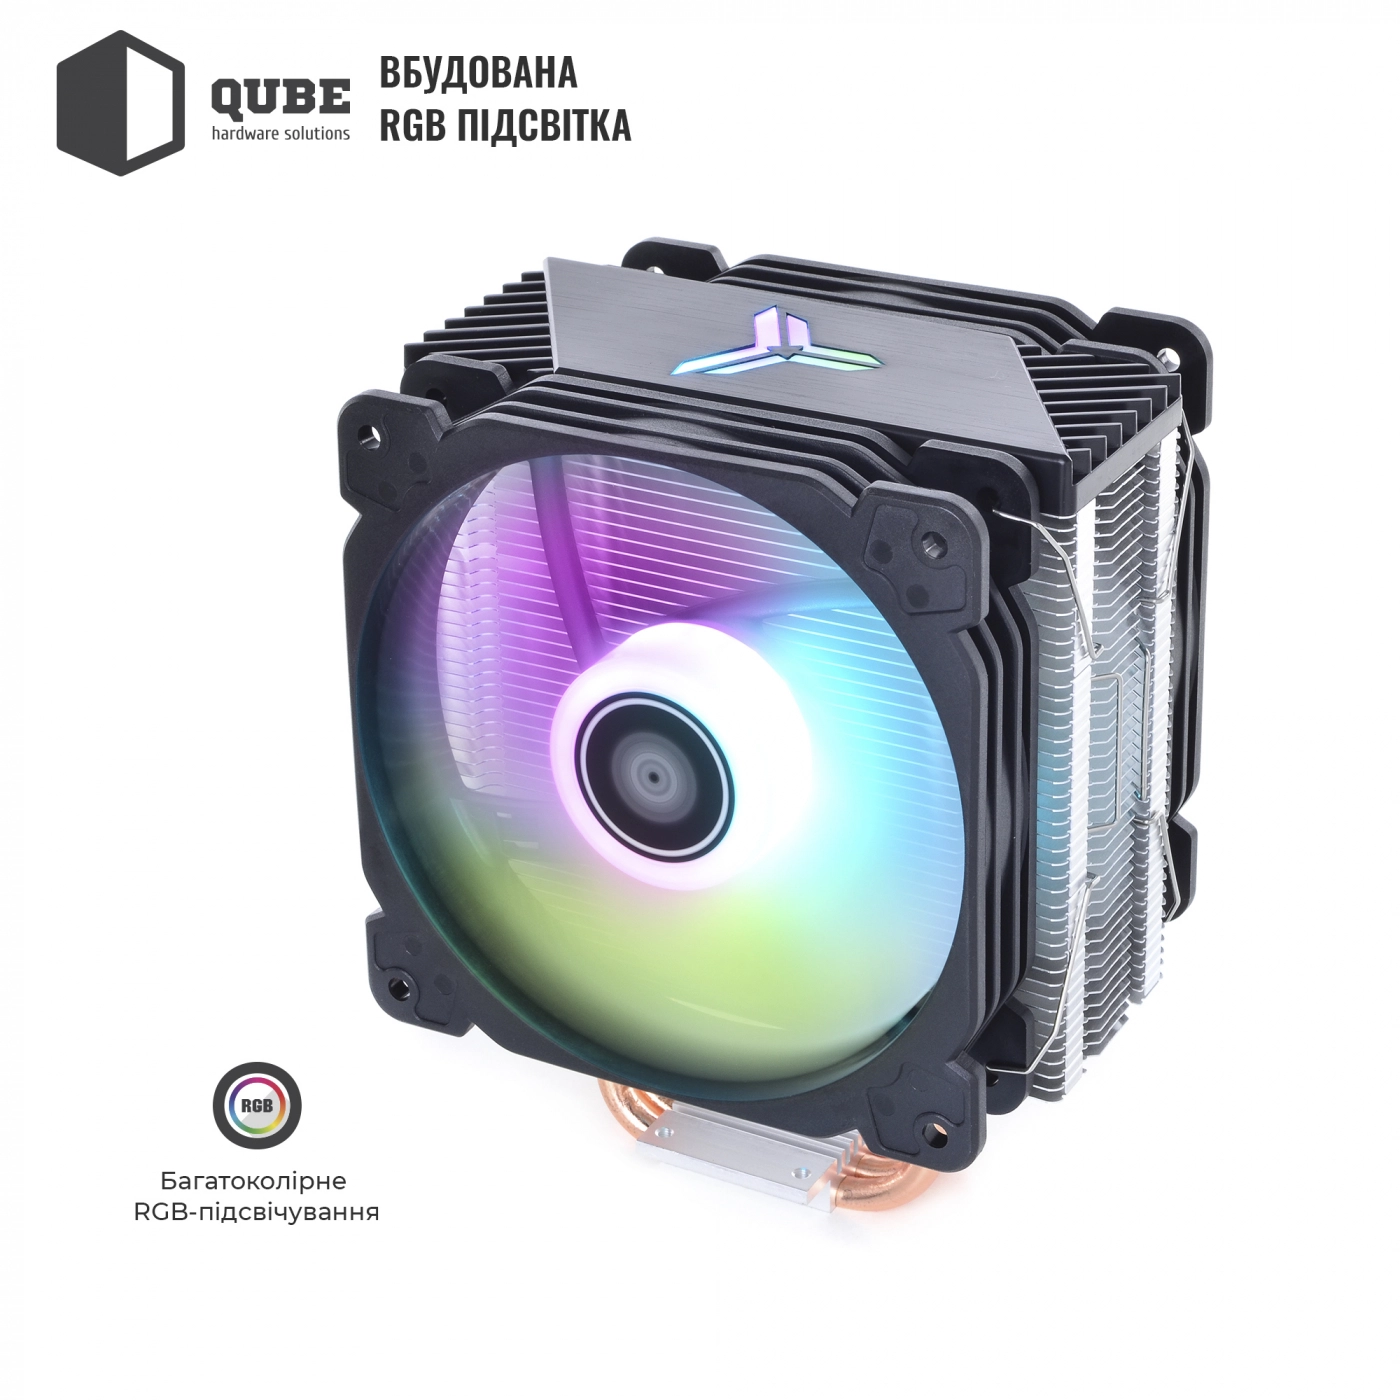 Купить Процессорный кулер QUBE QB-OL1000-PLUS (120mm/4pin/700-1500RPM/31.2dBA/мак. TDP 180W/4 тепл. трубки) - фото 4